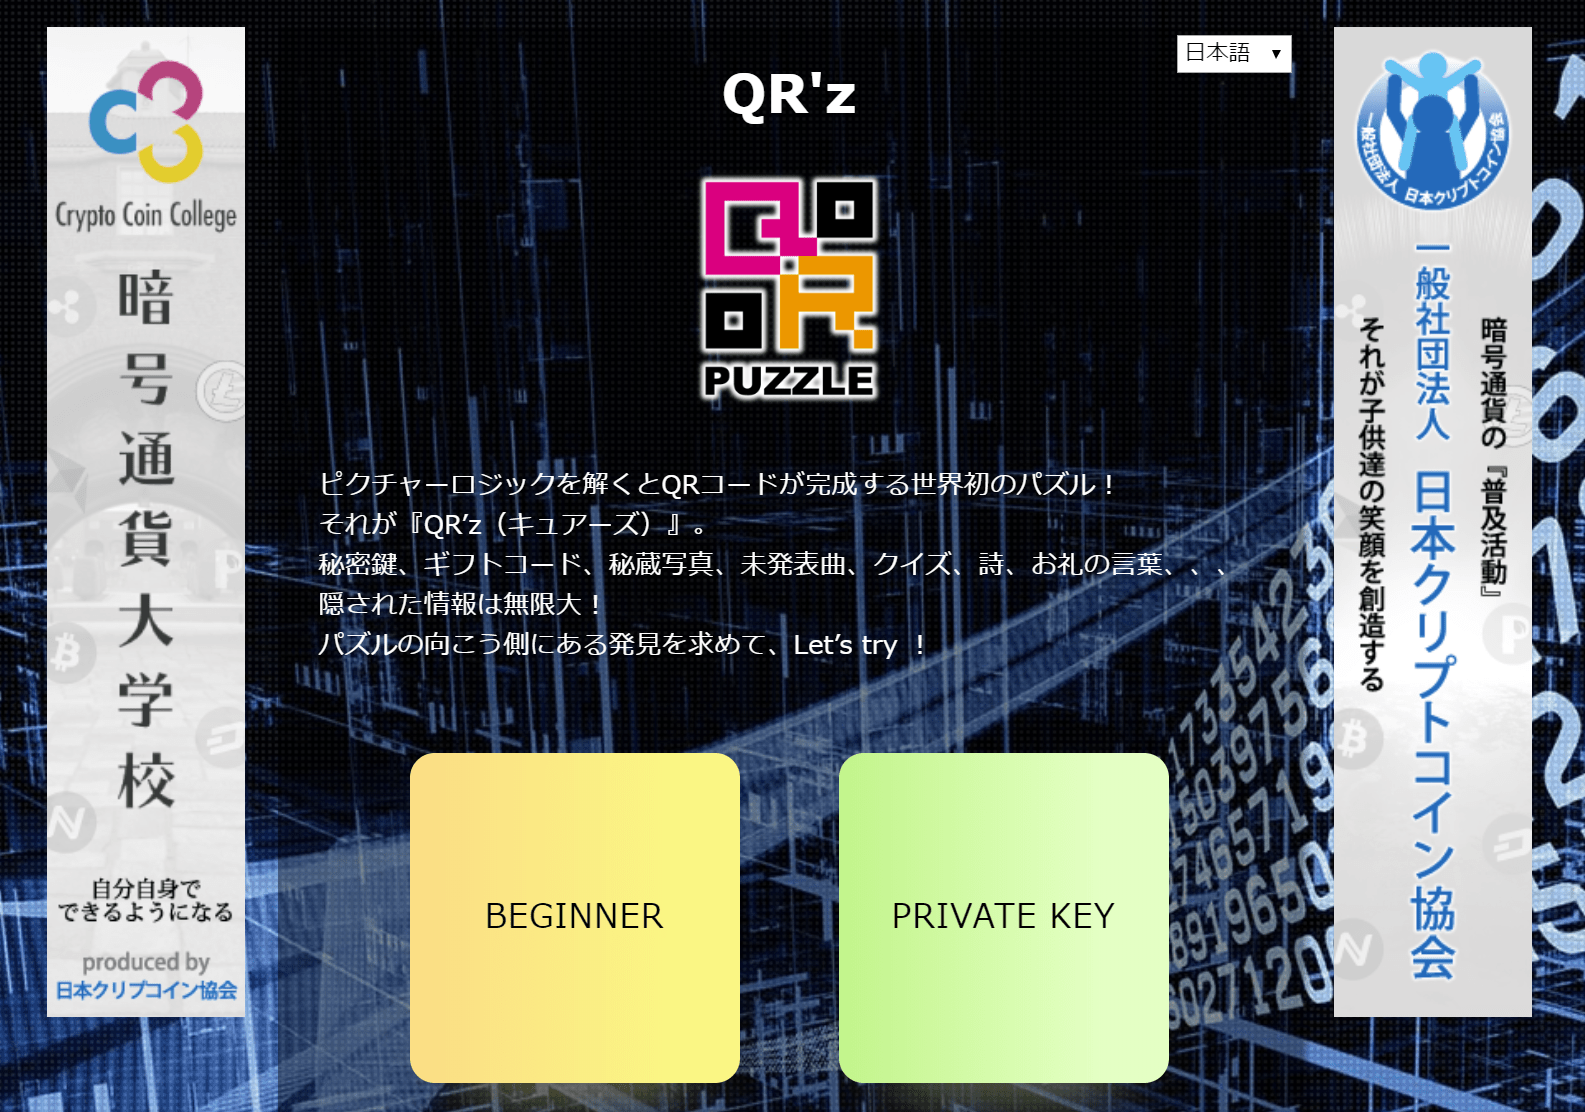 ｑｒコードピクチャーロジックパズルシステム 特願 19 Qr Z キュアーズ を2月28日に公開 日本クリプトコイン協会